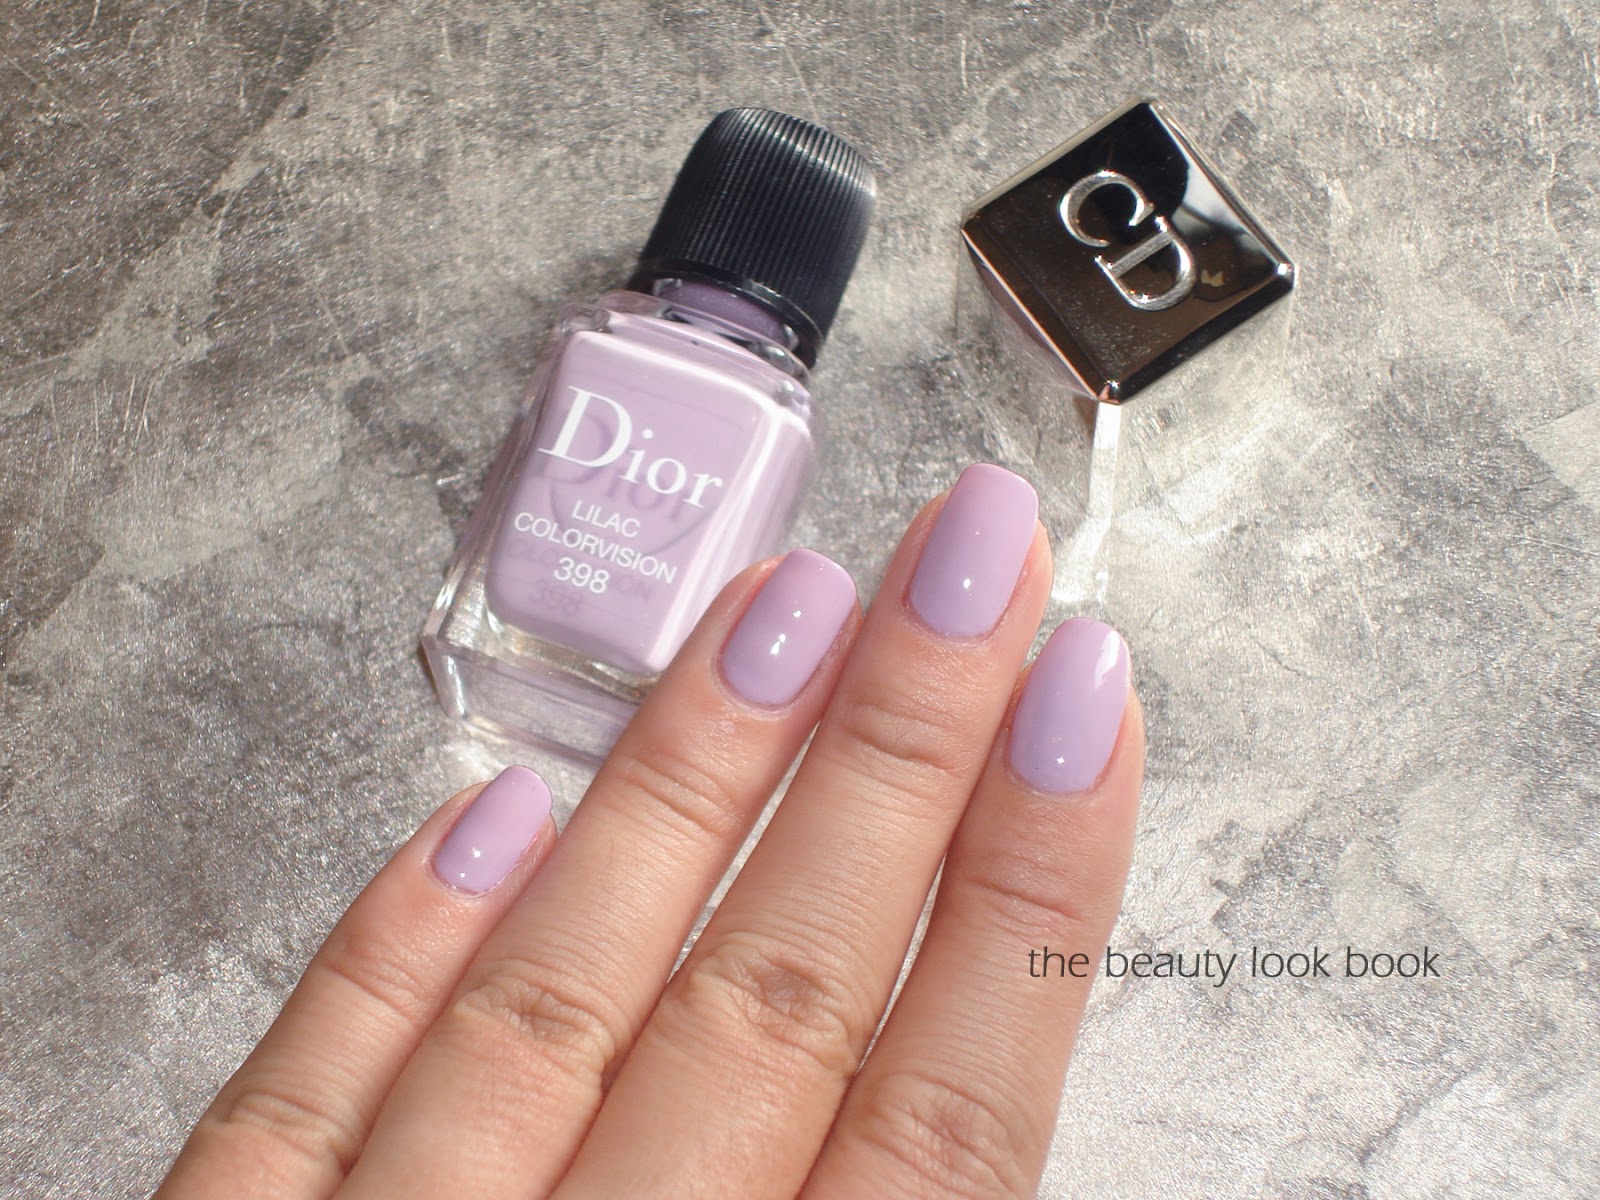 dior lilac nail polish